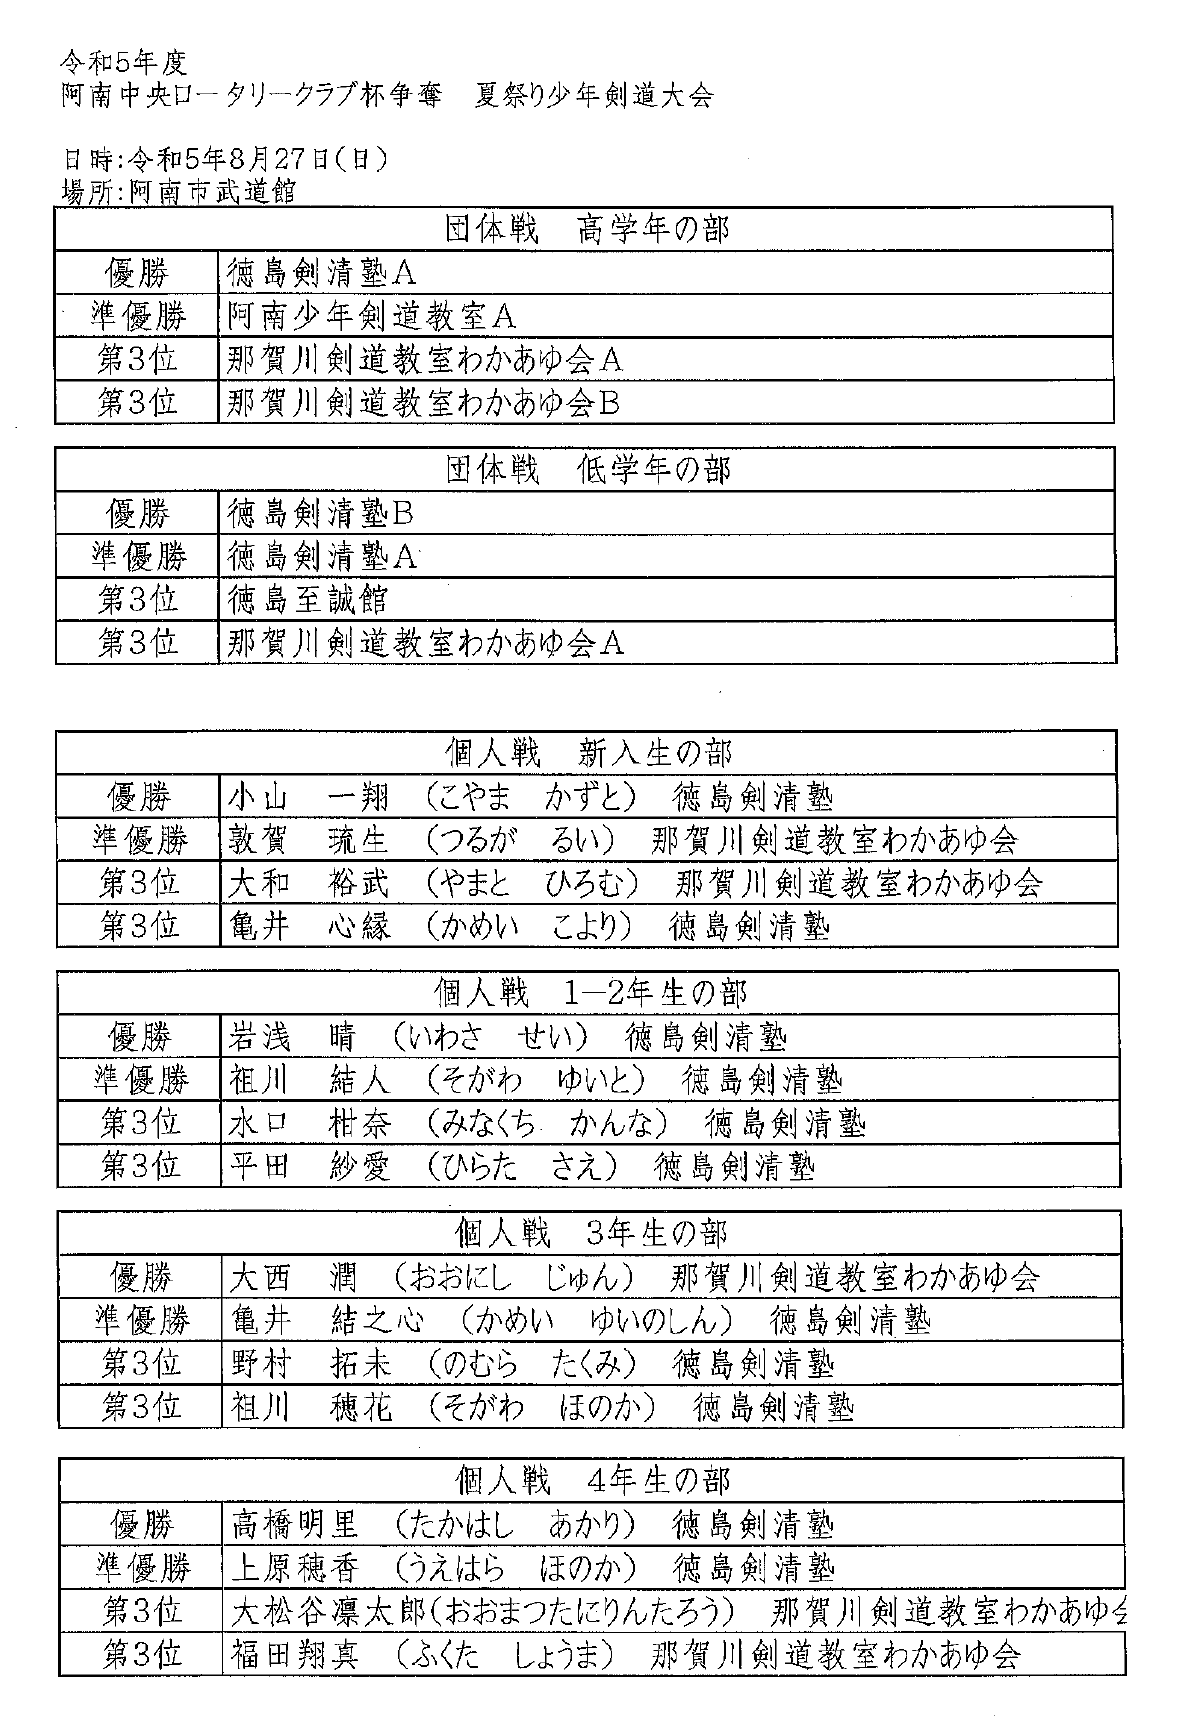 阿南中央ロータリークラブ杯争奪 夏祭り少年剣道大会成績表